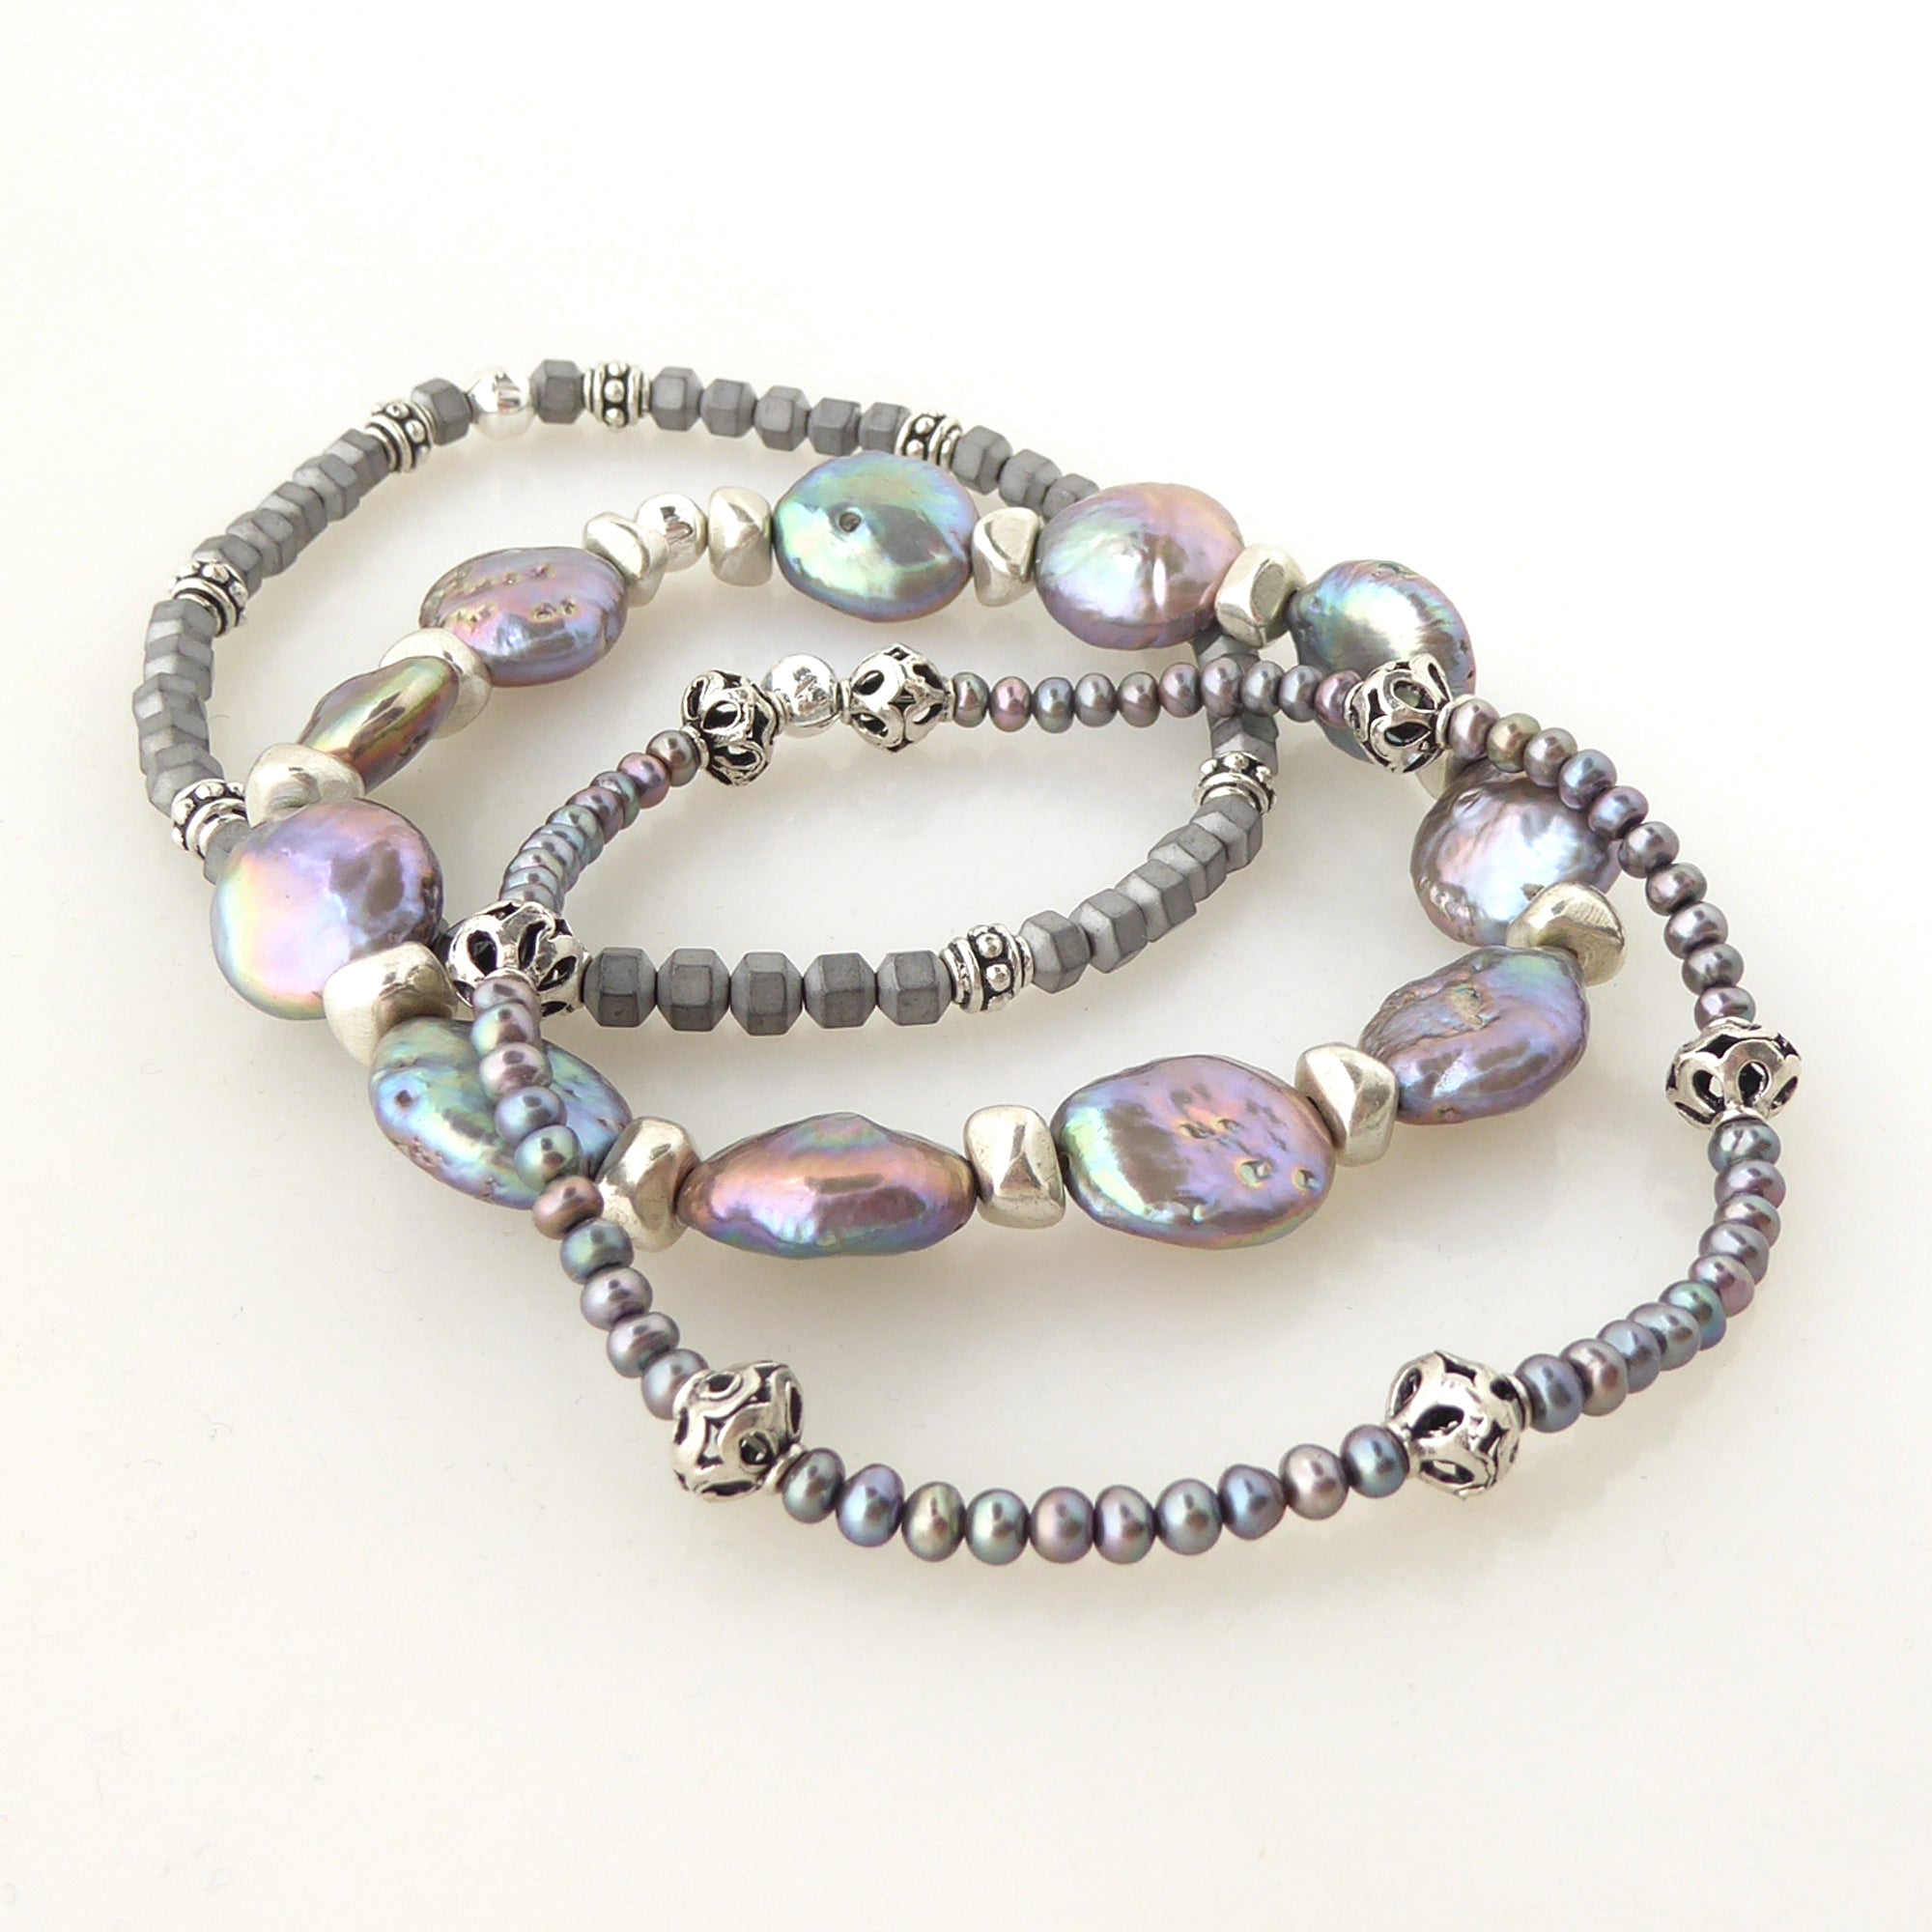 Peacock pearl bracelet set by Jenny Dayco 2